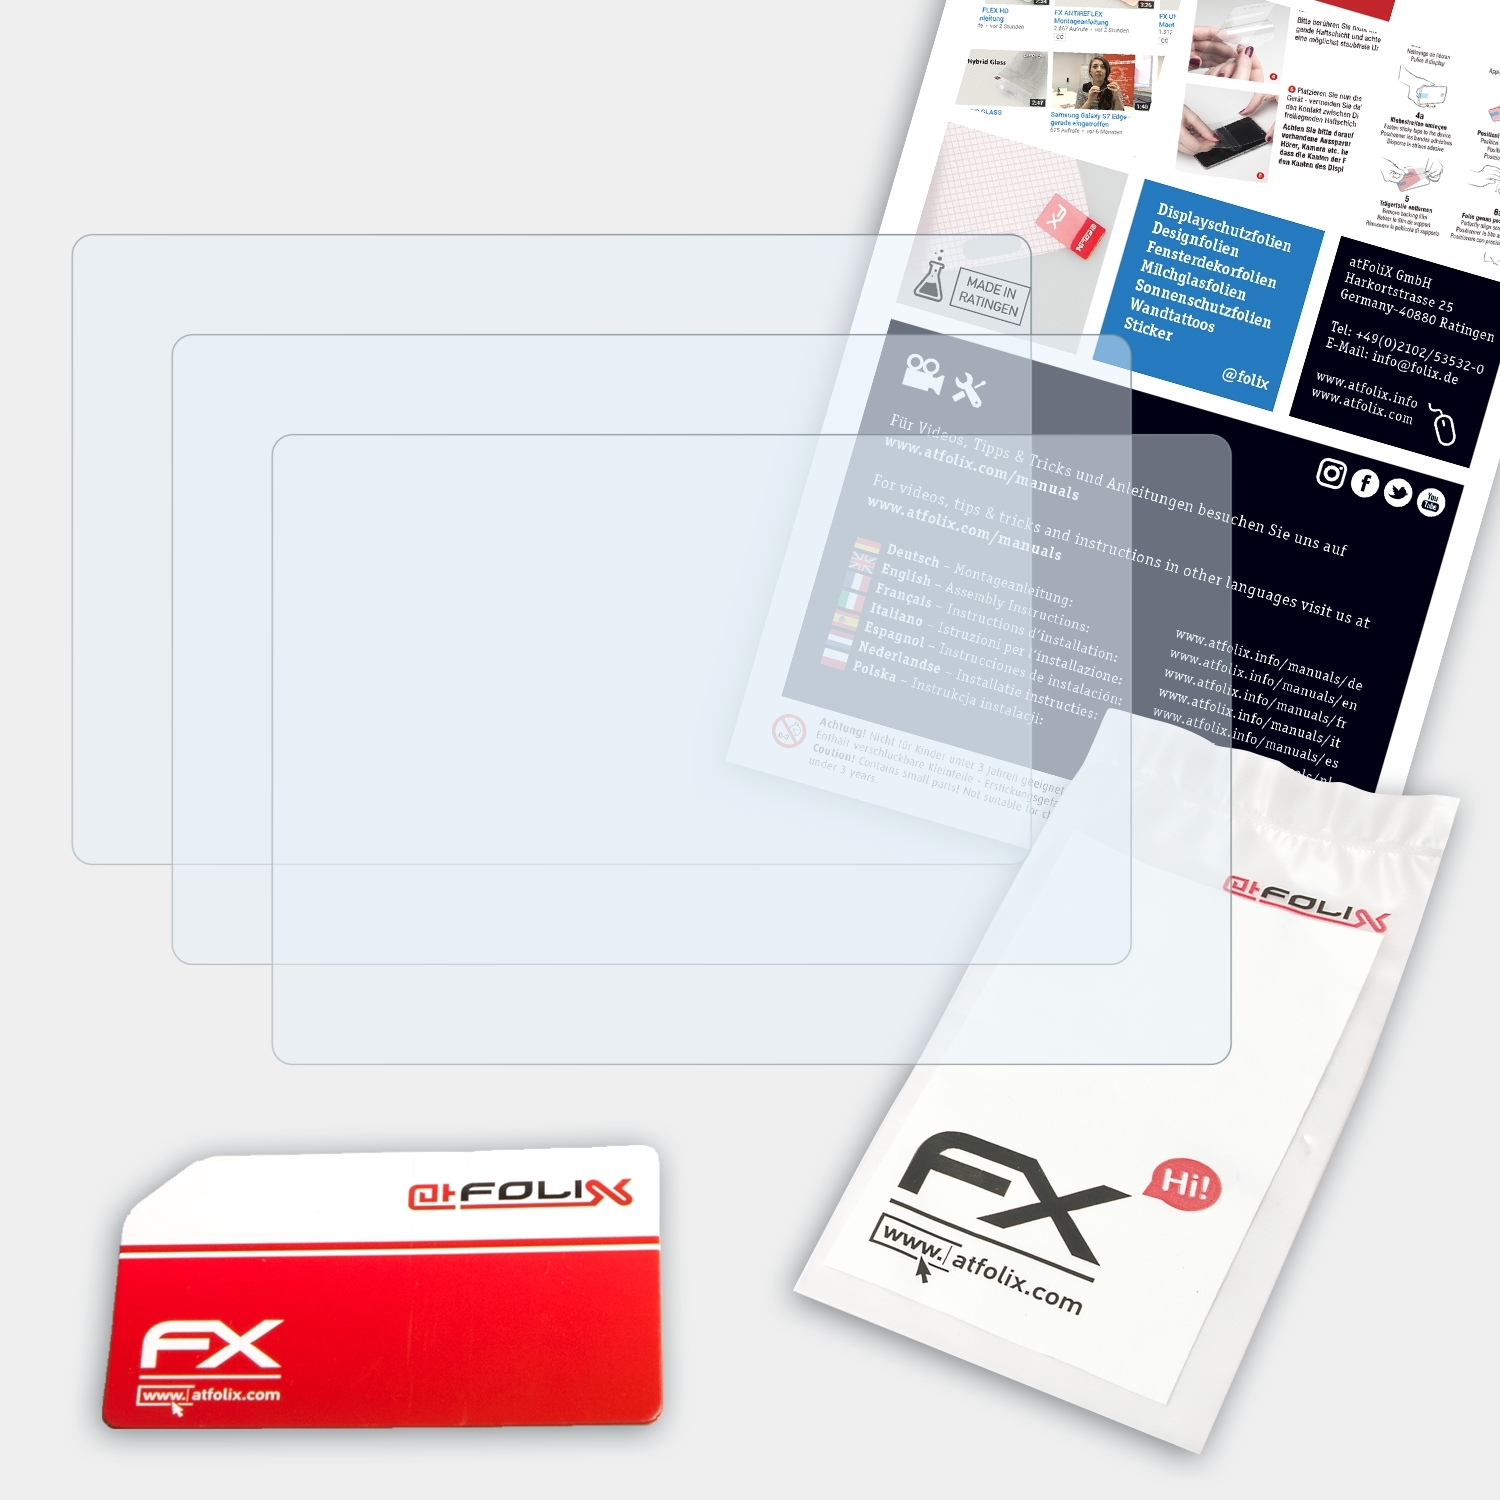 ATFOLIX DMC-G5) Panasonic Displayschutz(für 3x Lumix FX-Clear